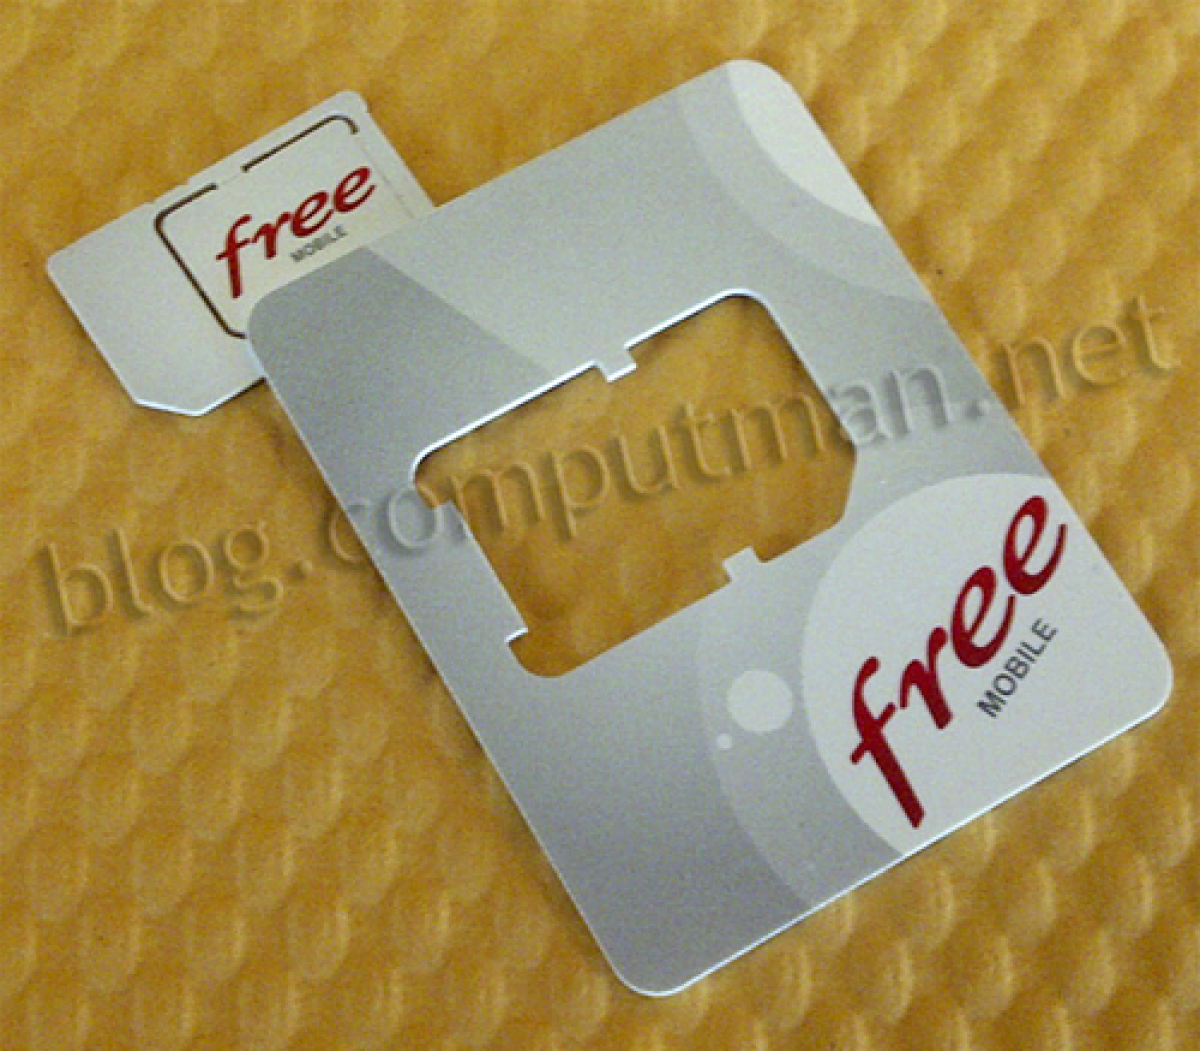 [Clin d’oeil] La carte SIM pour Free Mobile en photo